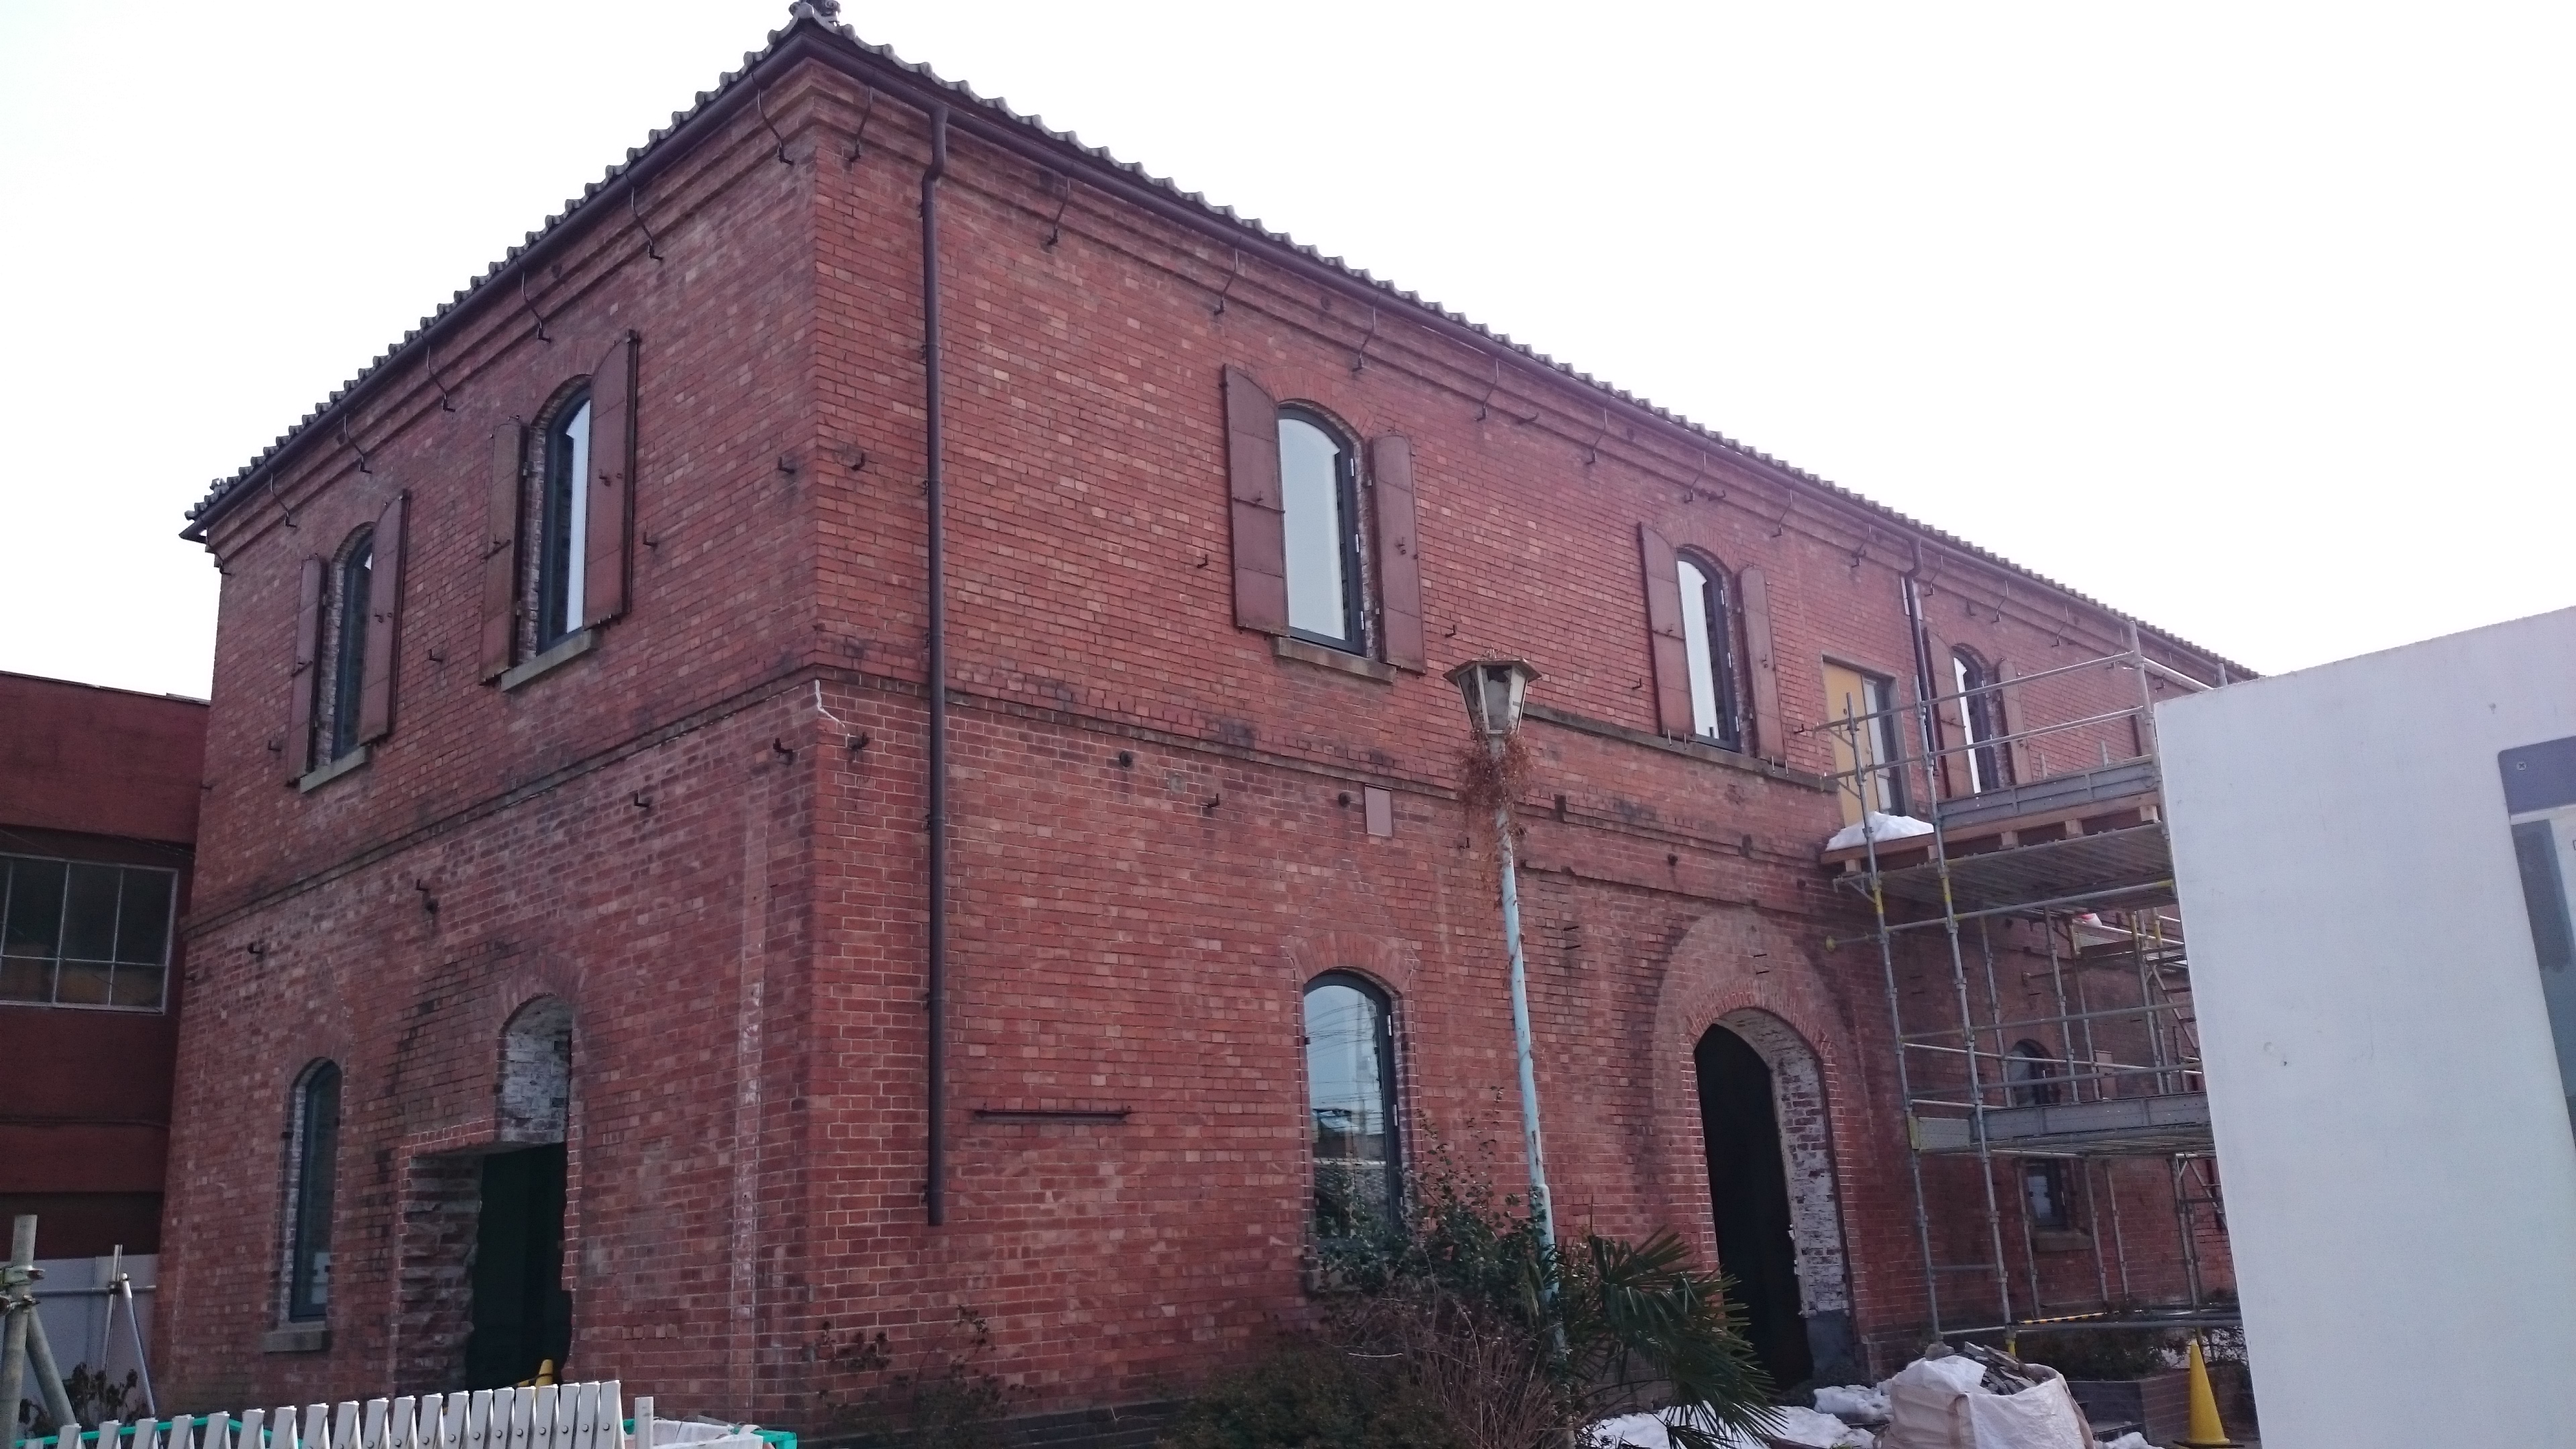 旧本庄商業銀行煉瓦倉庫保存改修二期工事